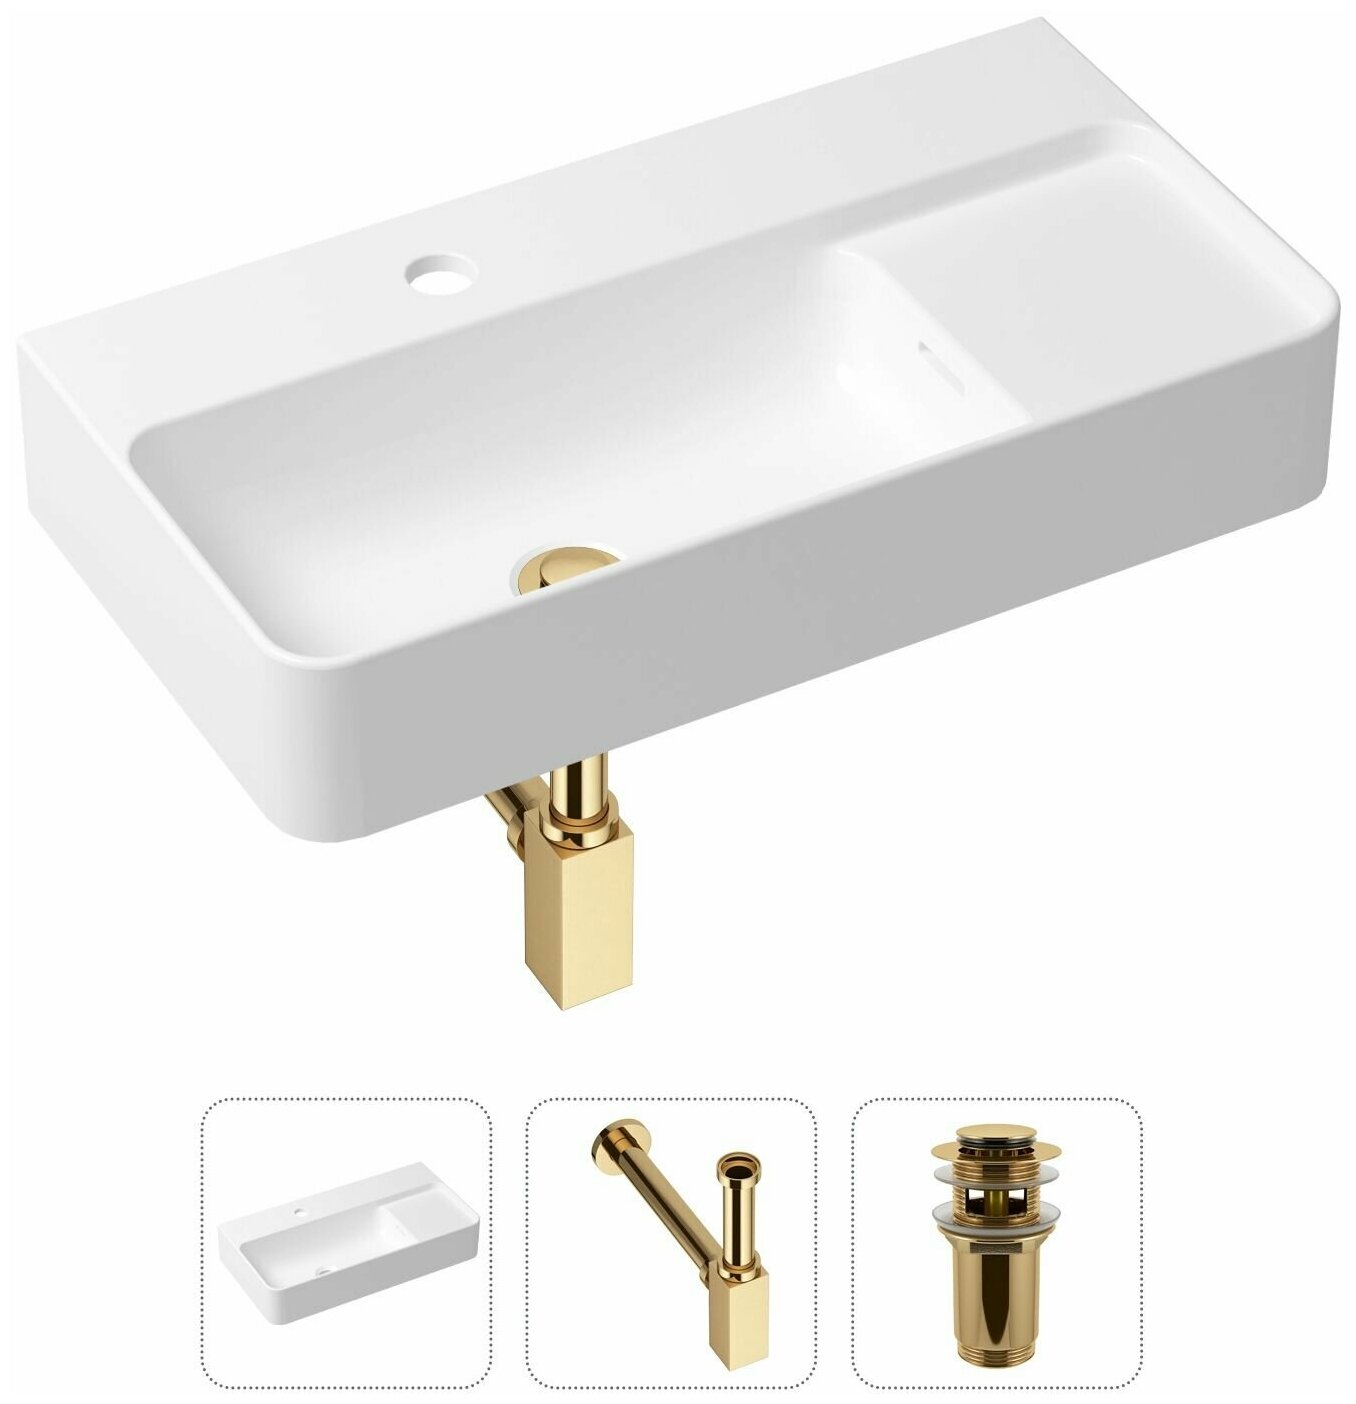 Комплект 3 в 1 Lavinia Boho Bathroom Sink 21520506: накладная фарфоровая раковина 60 см, металлический сифон, донный клапан